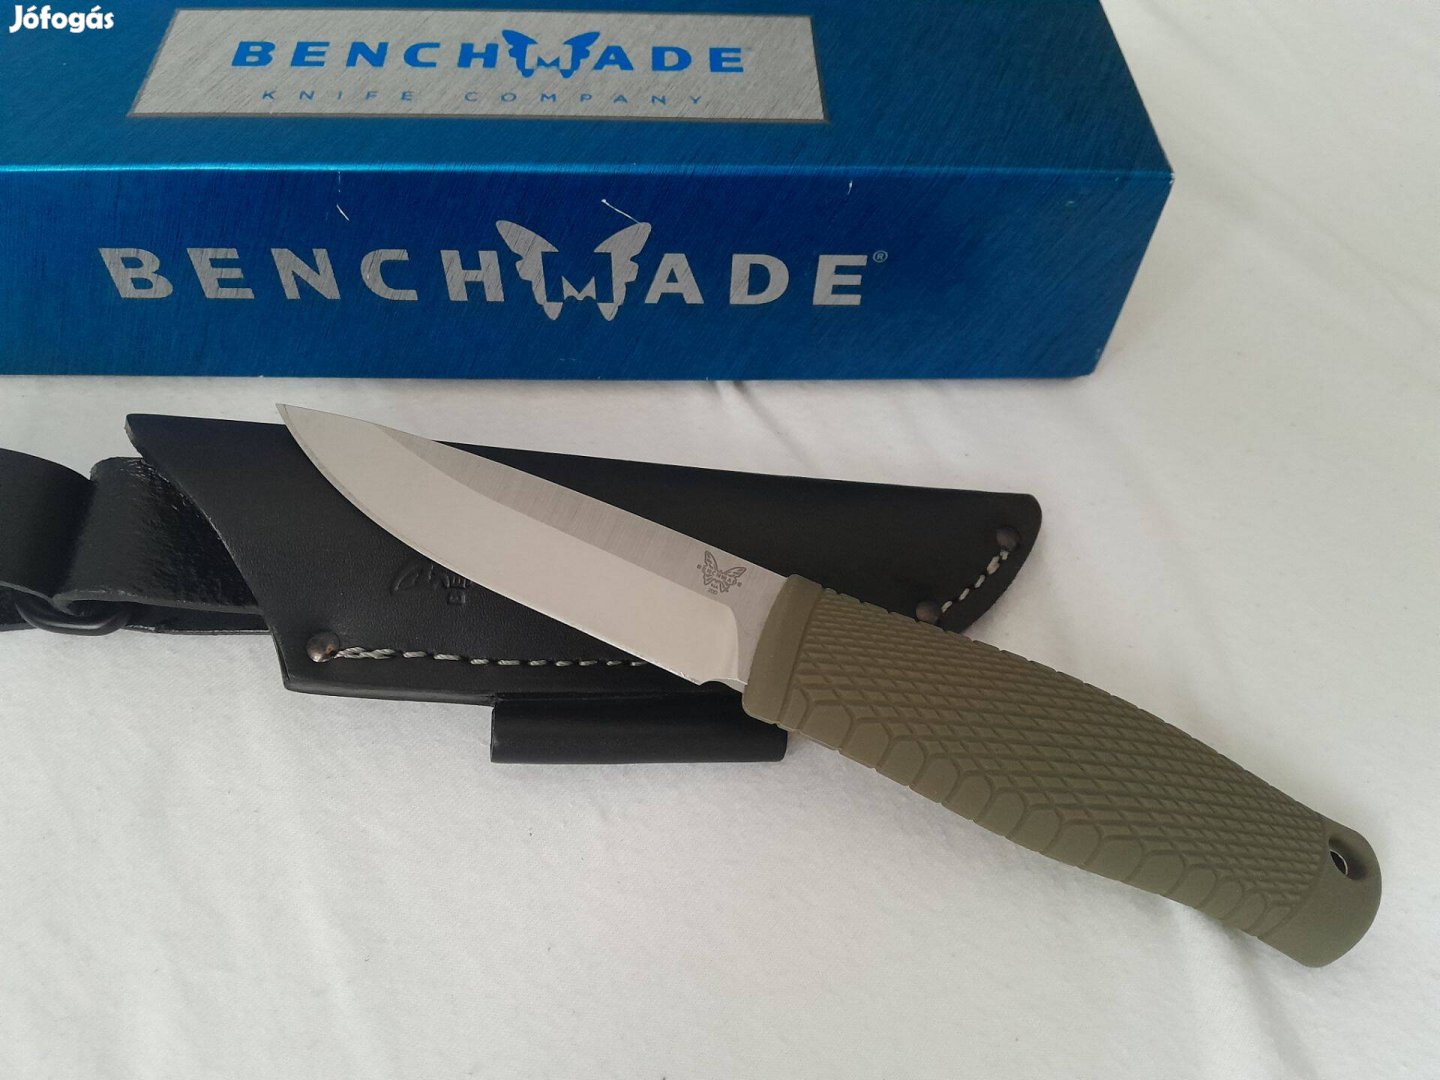 Benchmade puukko vadász kés dobozával számlávaĺ